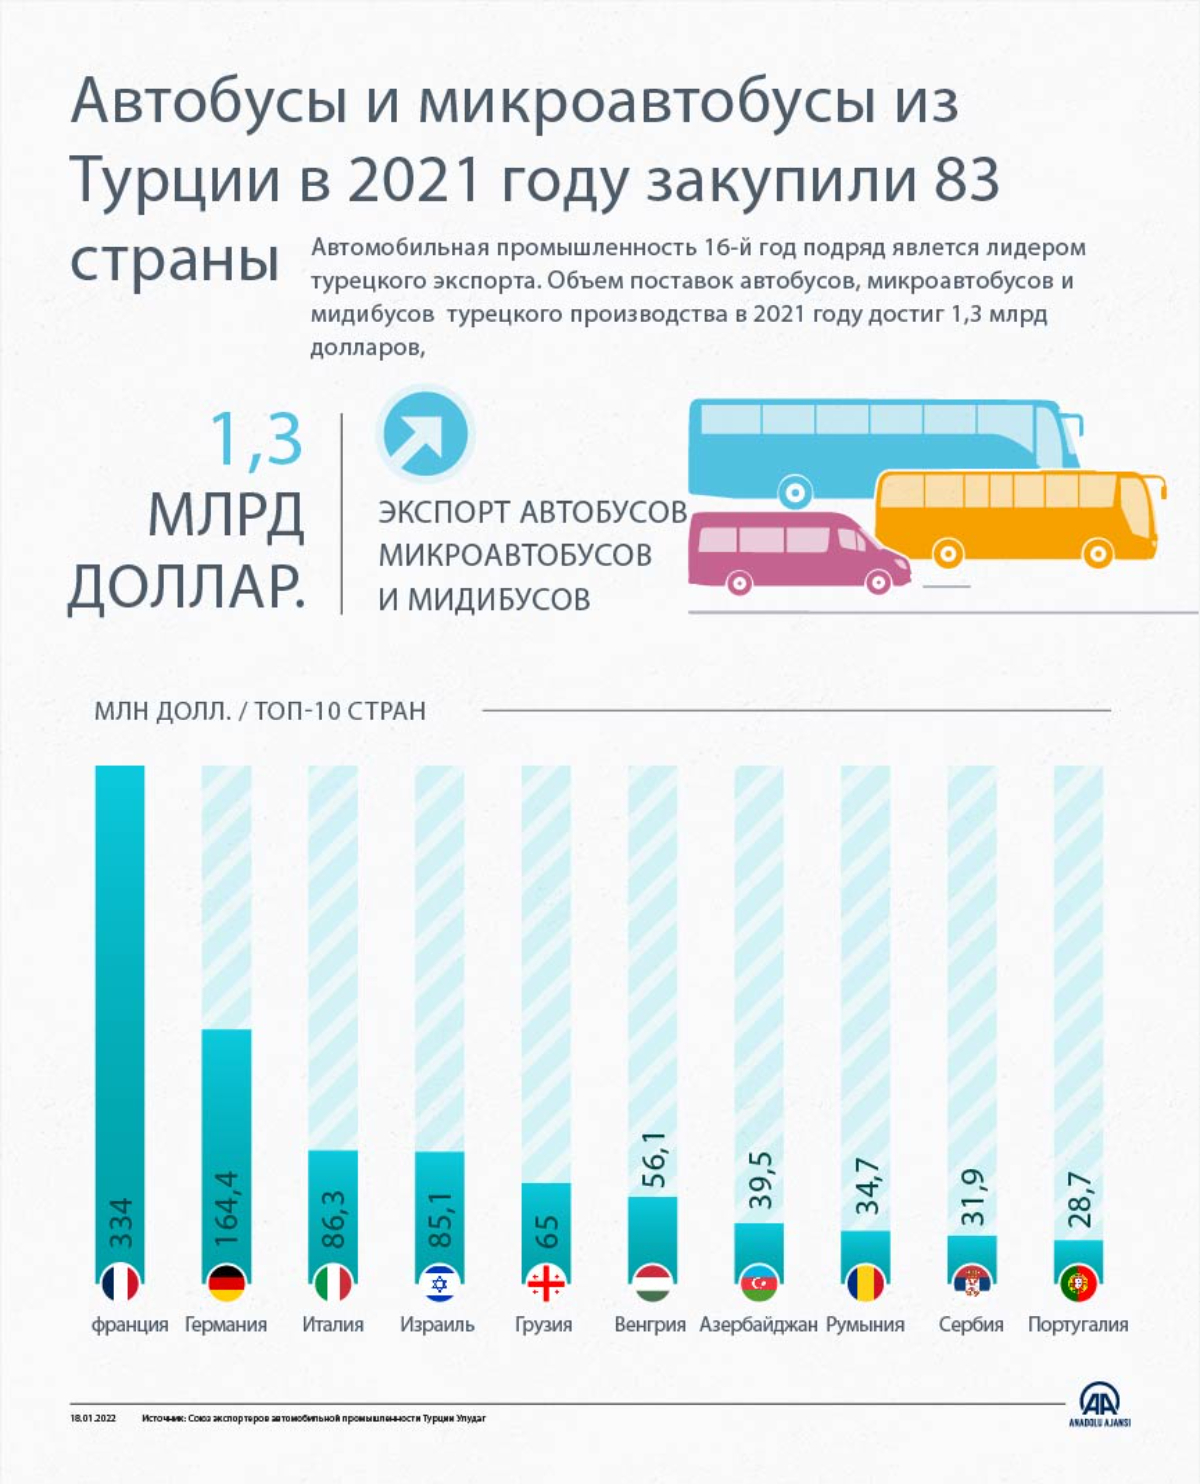 Автобусы и микроавтобусы производства Турции в 2021 году закупили 83 страны